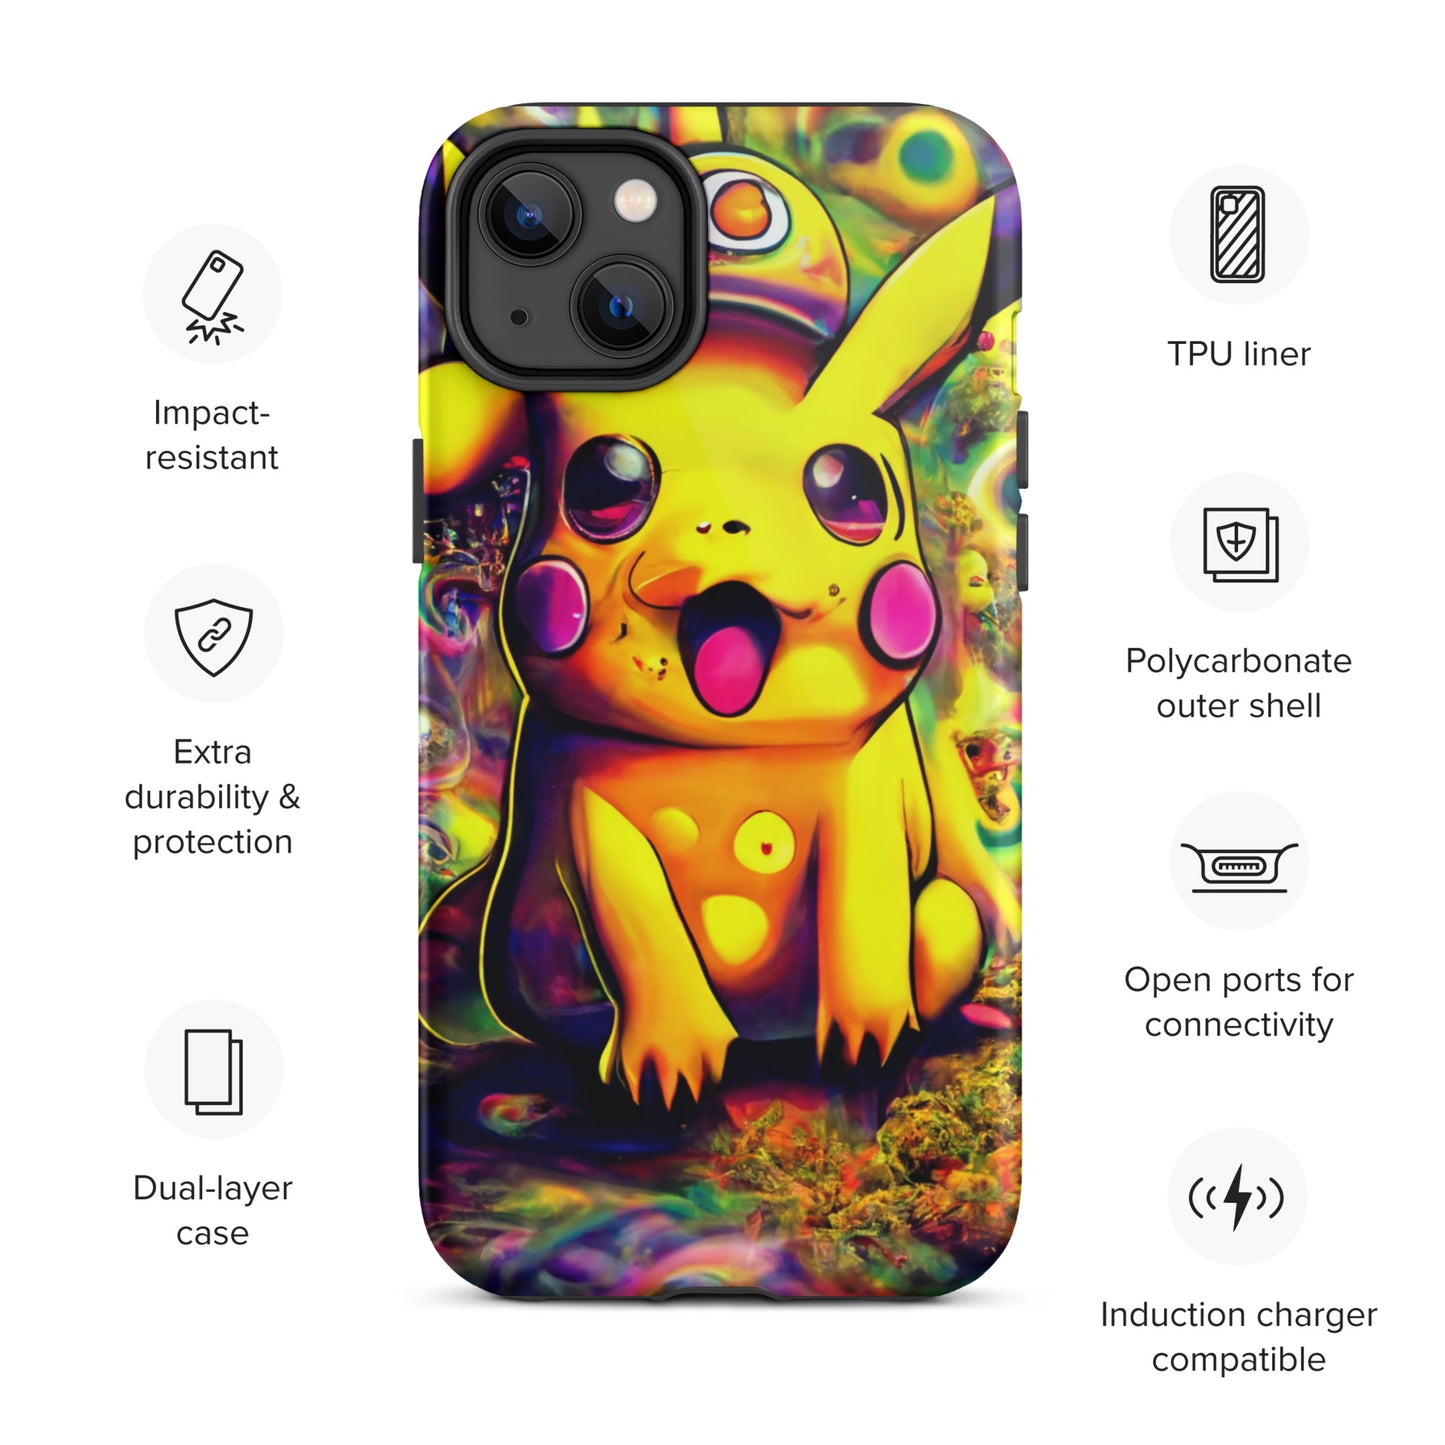 Pikachu Trip 1.0 Tough iPhone case